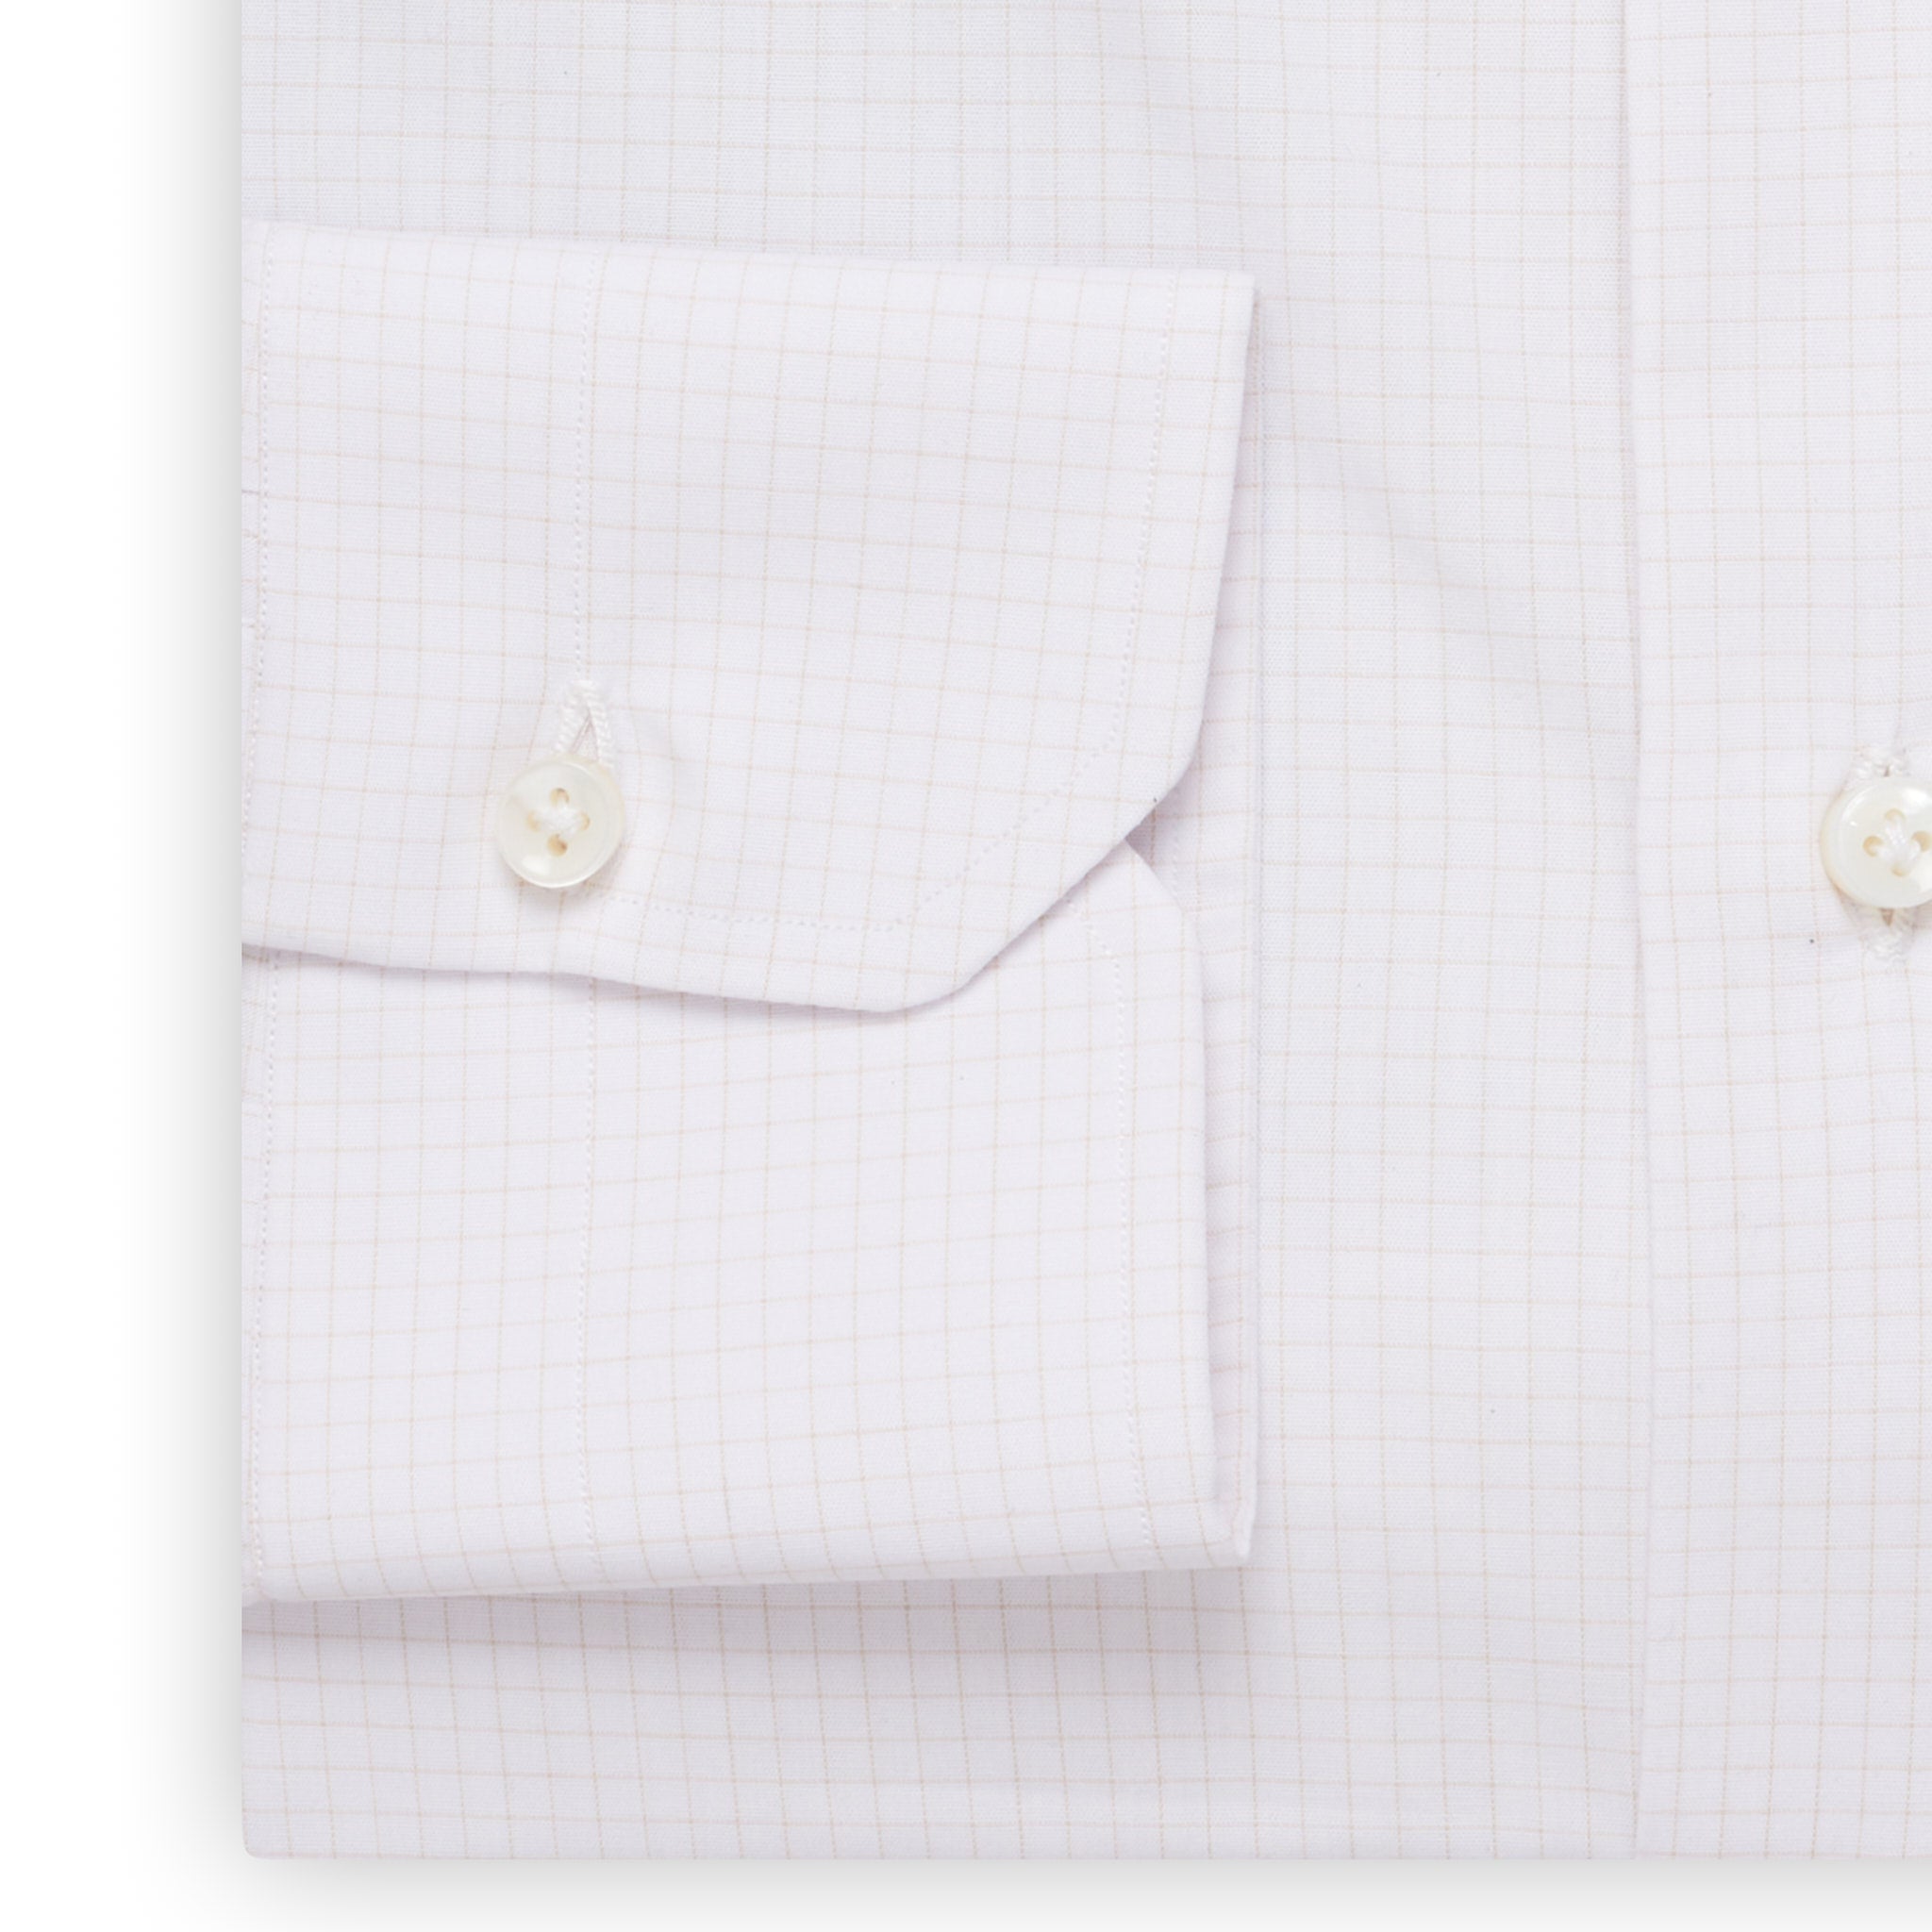 MATTABISCH by Kiton Handmade White Beige Checkered Dress Shirt NEW MATTABISCH